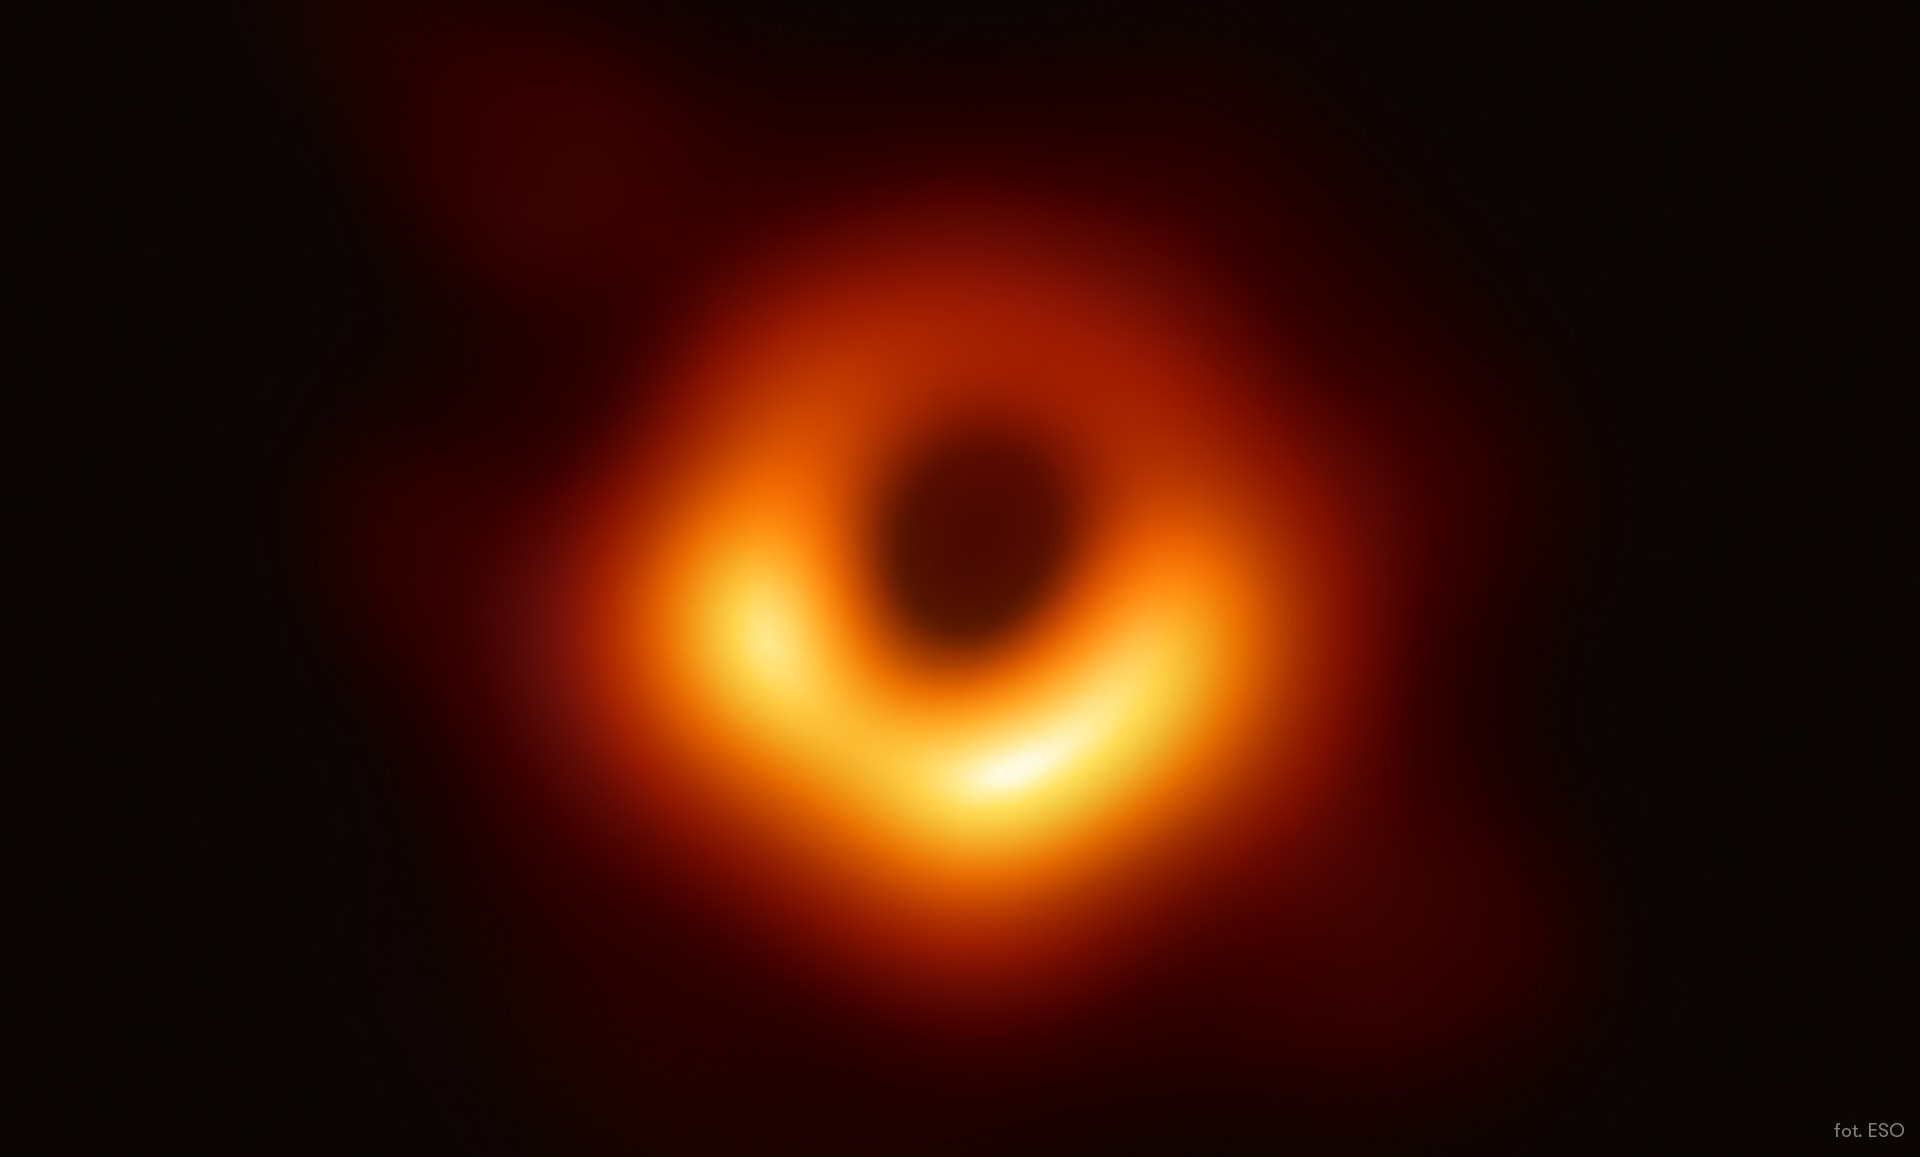 Czarna dziura w galaktyce M87